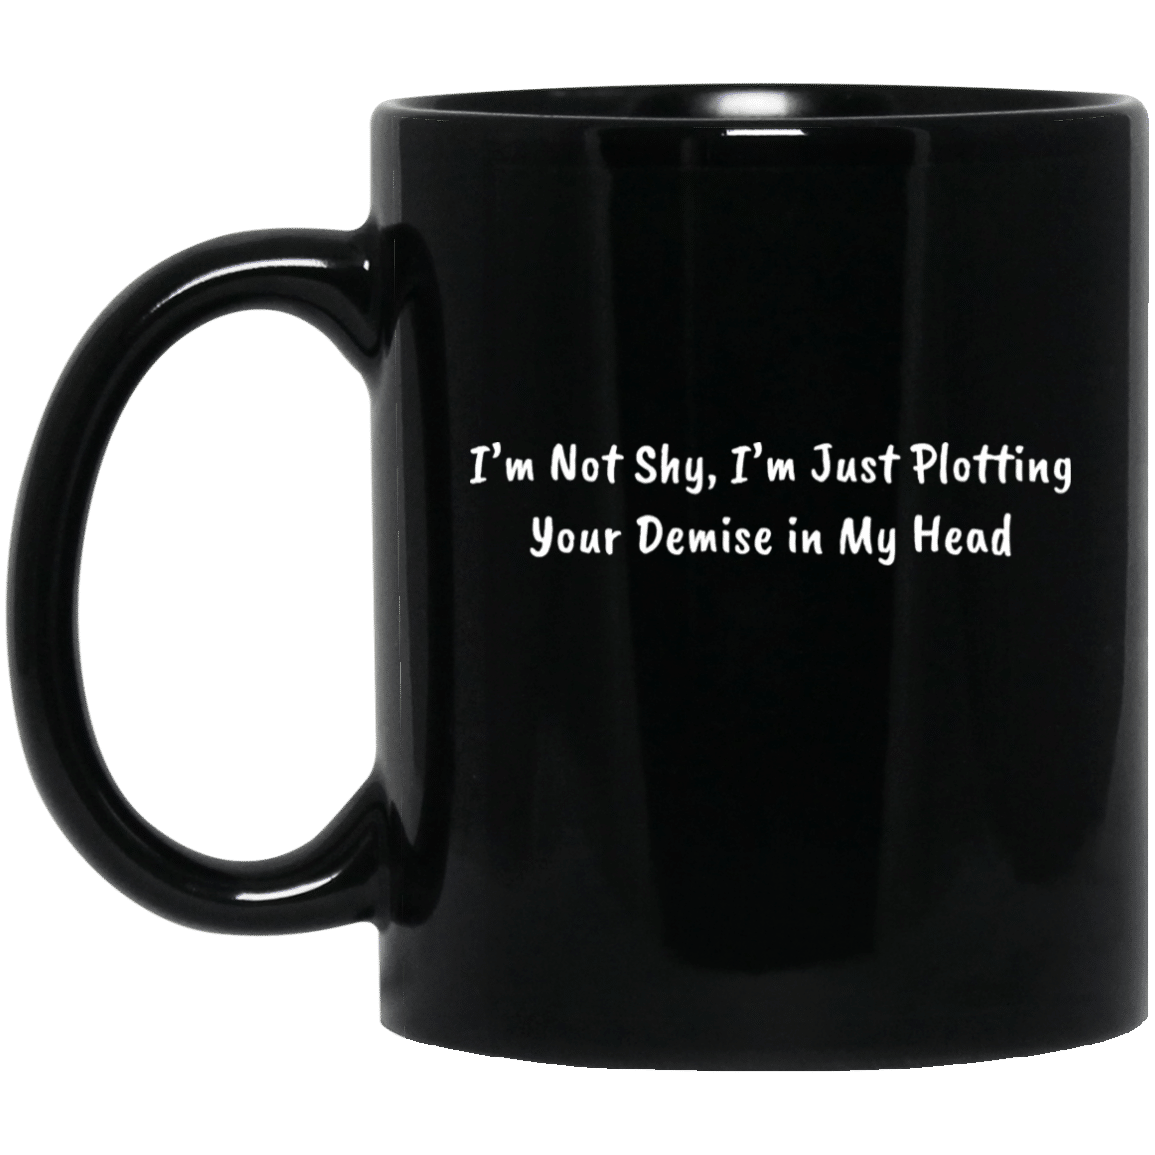 I'm Not Quiet, I'm Plotting Coffee Mug Microwave and Dishwasher